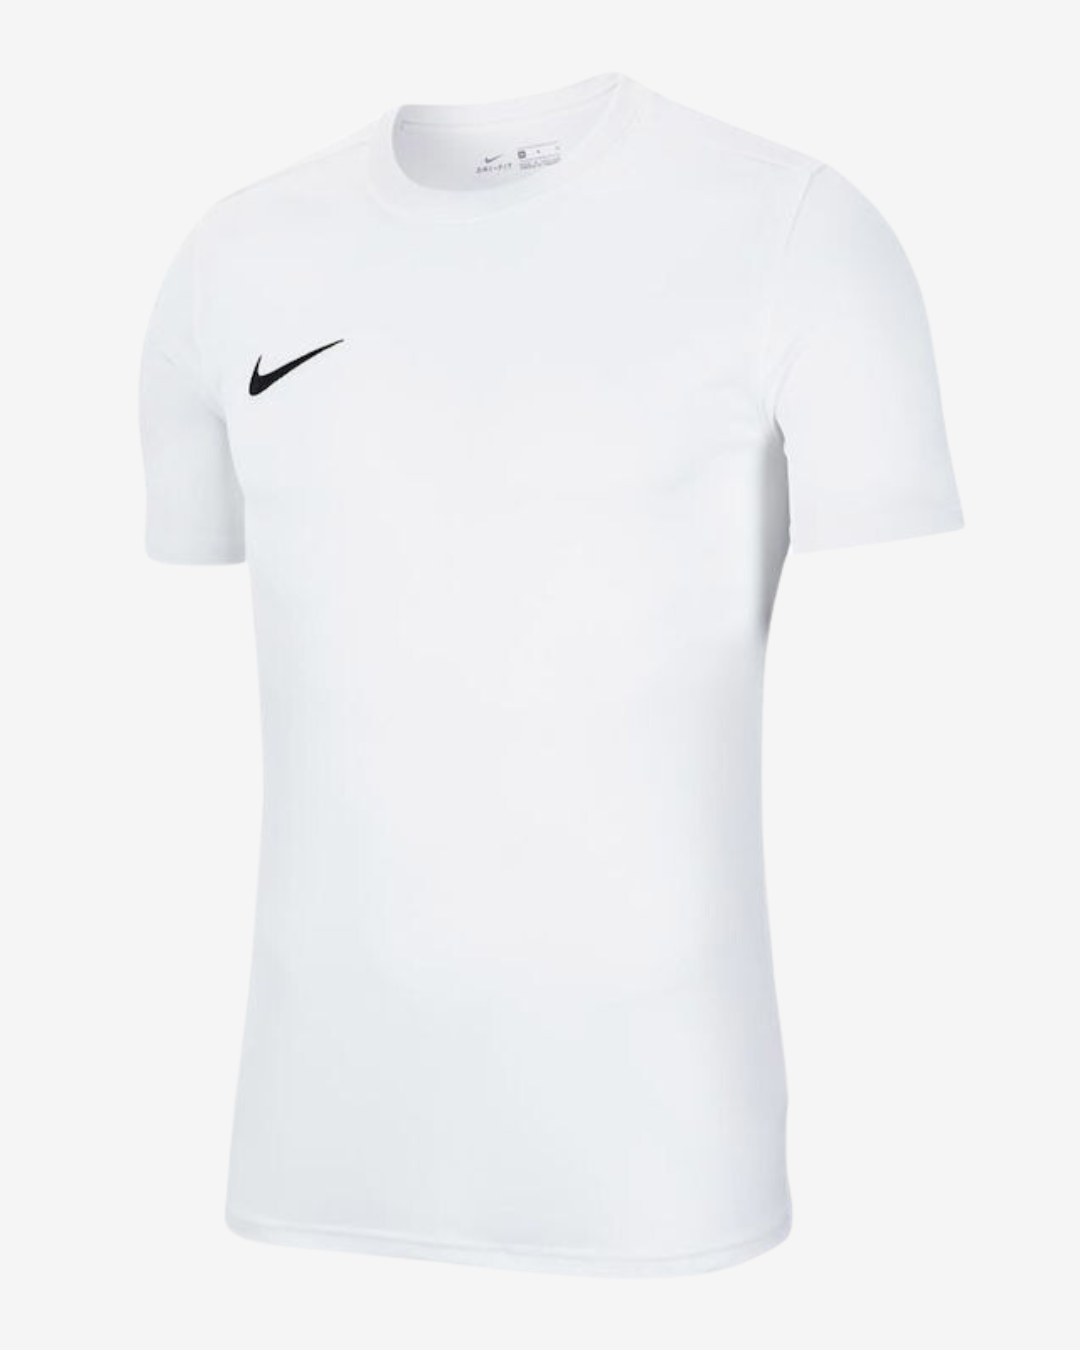 Billede af Nike Dri-fit park 7 t-shirt - Hvid - Str. S - Modish.dk